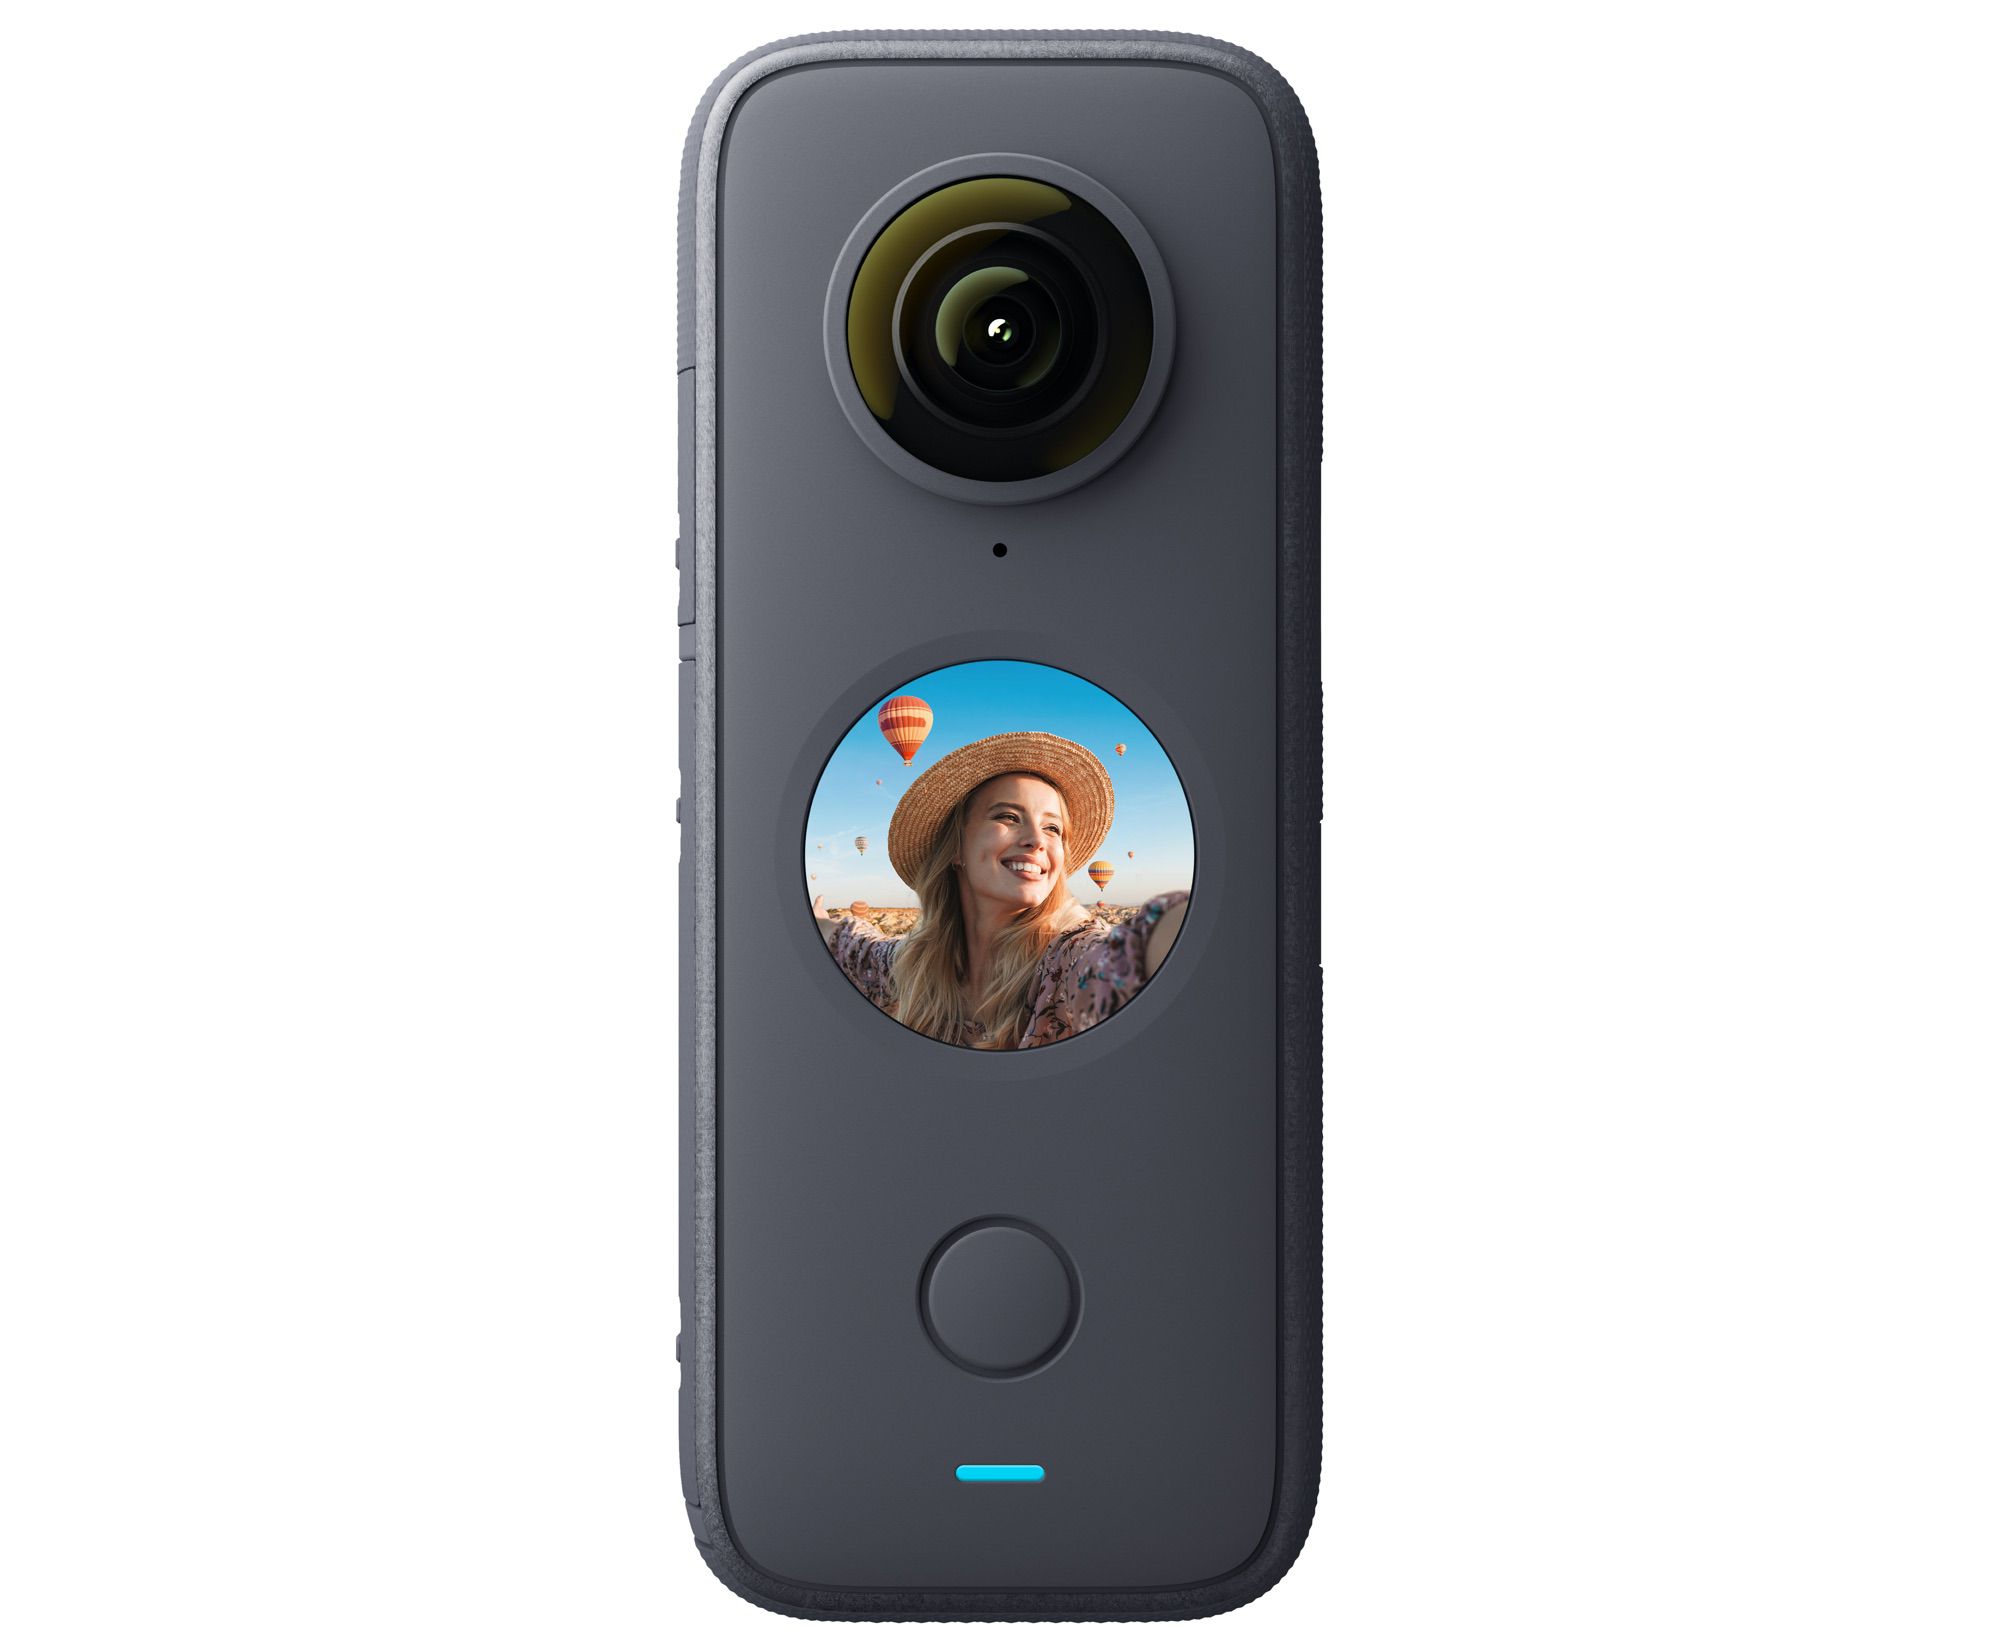 Insta360 Launches New ONE X2 360-Degree Camera - MacRumors